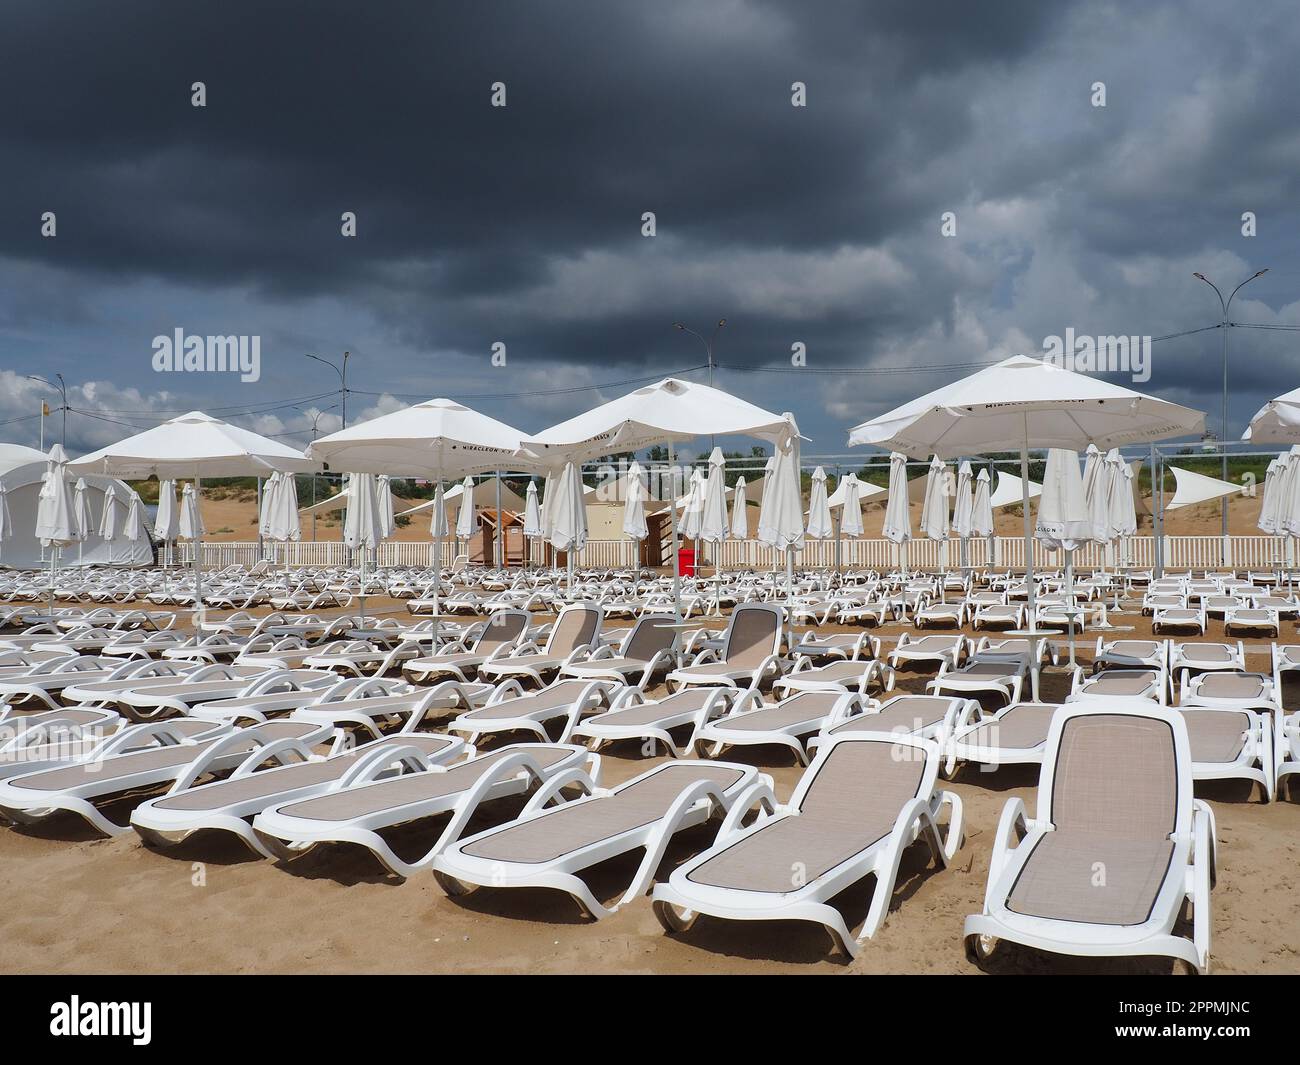 Anapa, Russia, 15 agosto 2021 lettini e ombrelloni bagnati sulla spiaggia di mare durante una forte tempesta di pioggia. Ombrellone arrotolato sulla spiaggia contro il cielo nuvoloso scuro. Invasione di un tifone, ciclone o tempesta Foto Stock